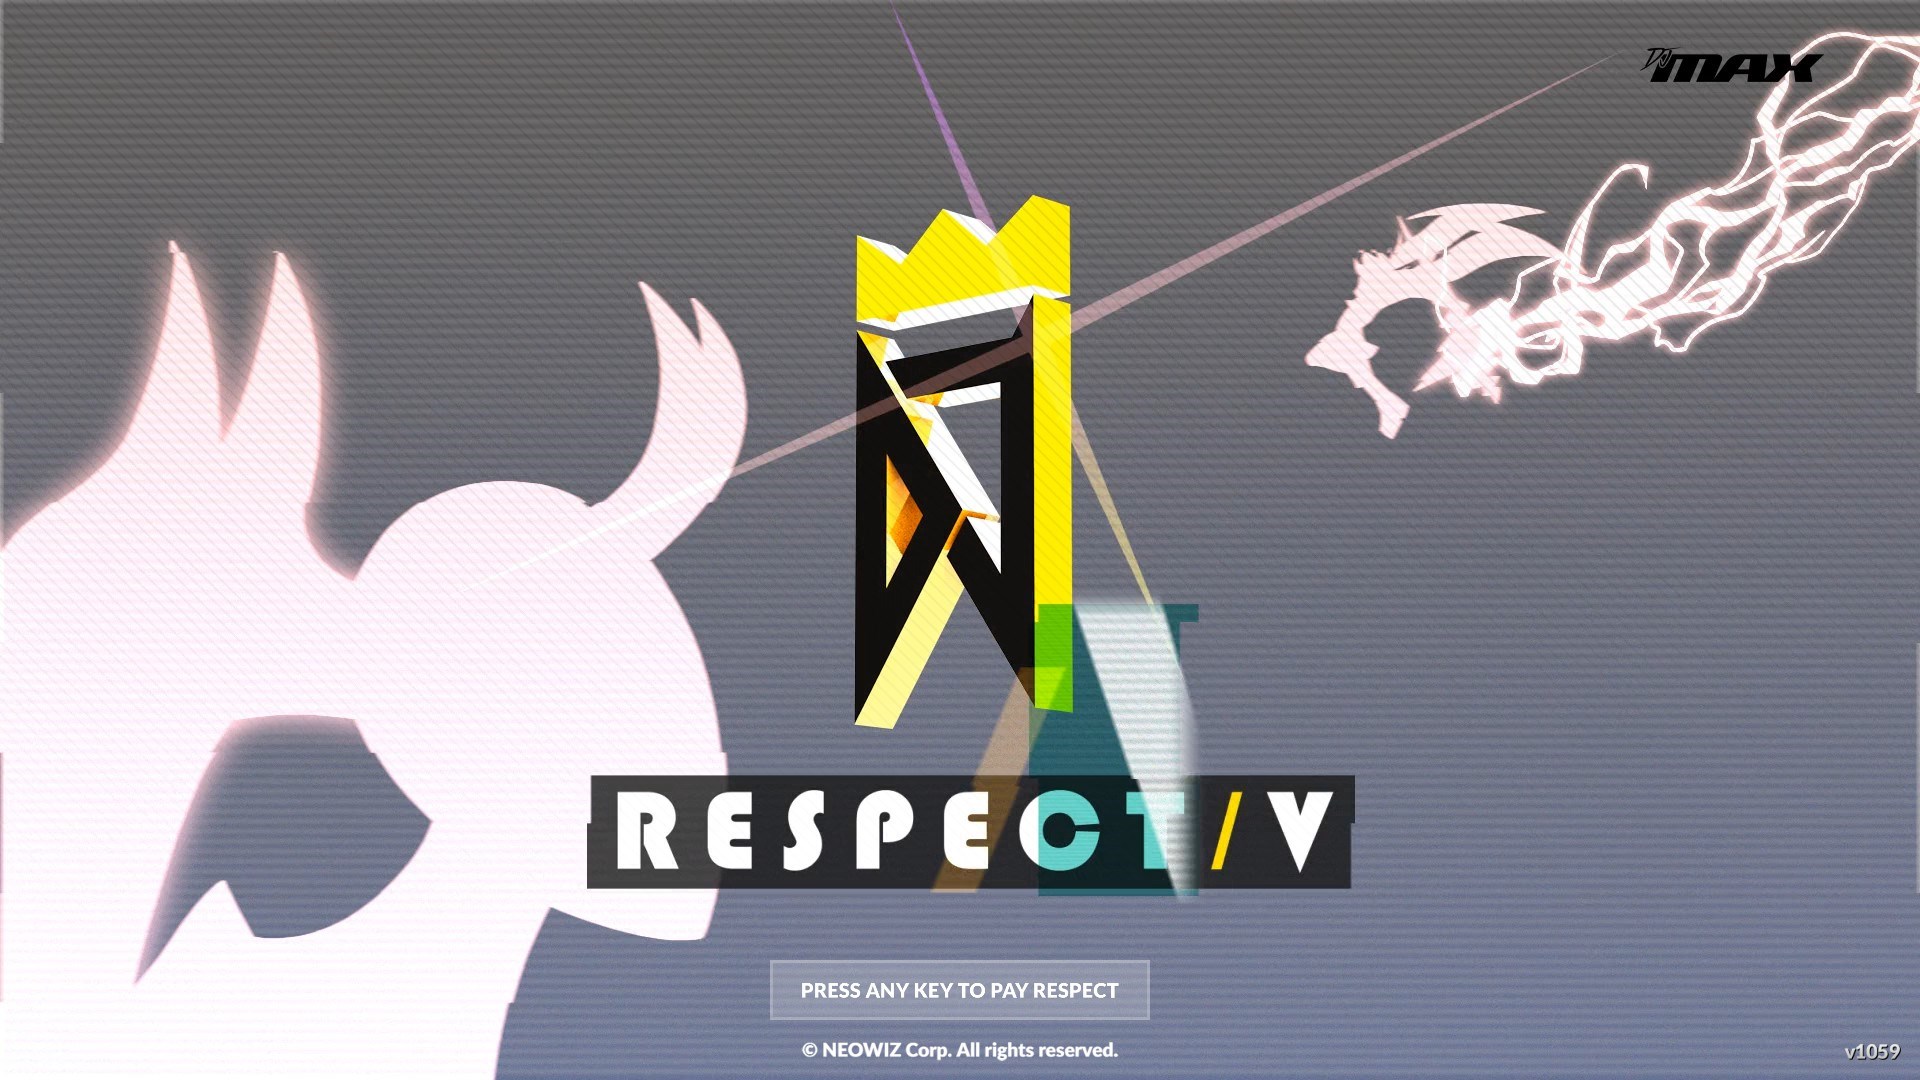 DJMAX RESPECT V screenshot 46512